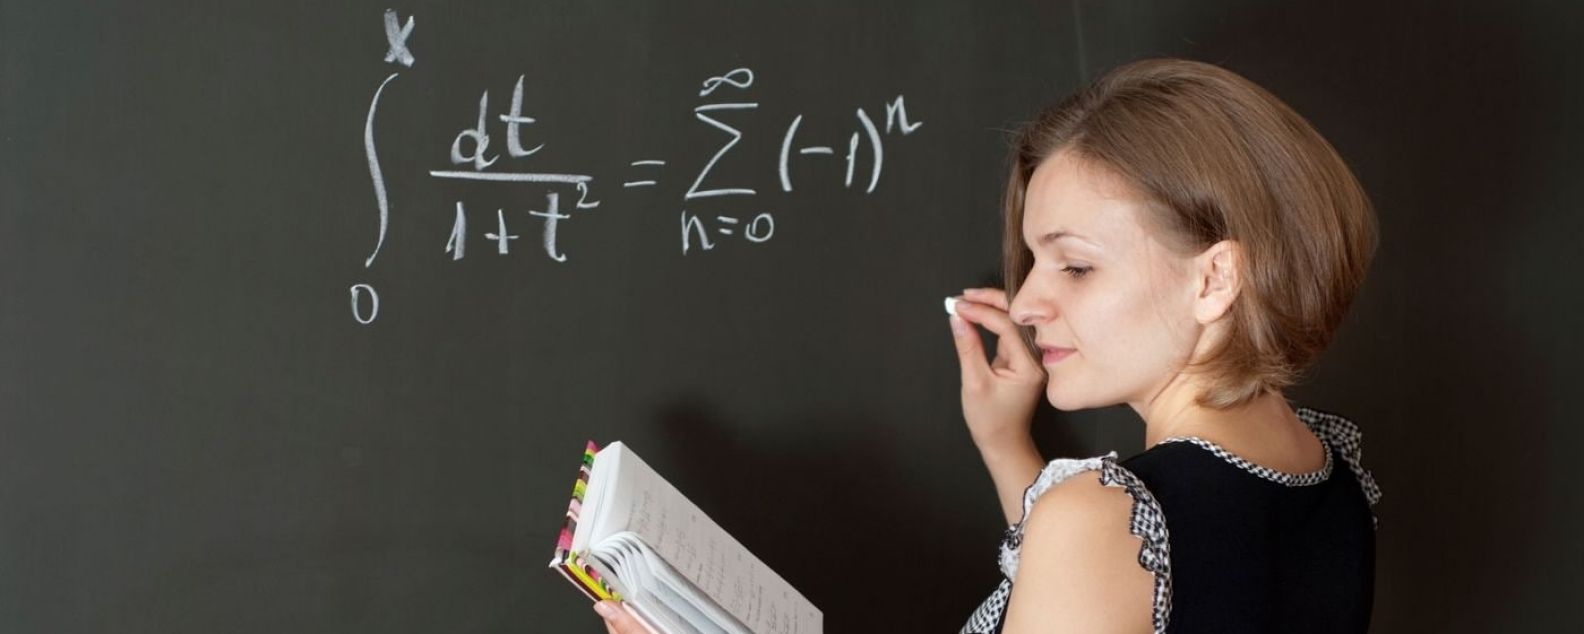 Mujer escribiendo una ecuación matemática en una pizarra mientras hace referencia a un libro